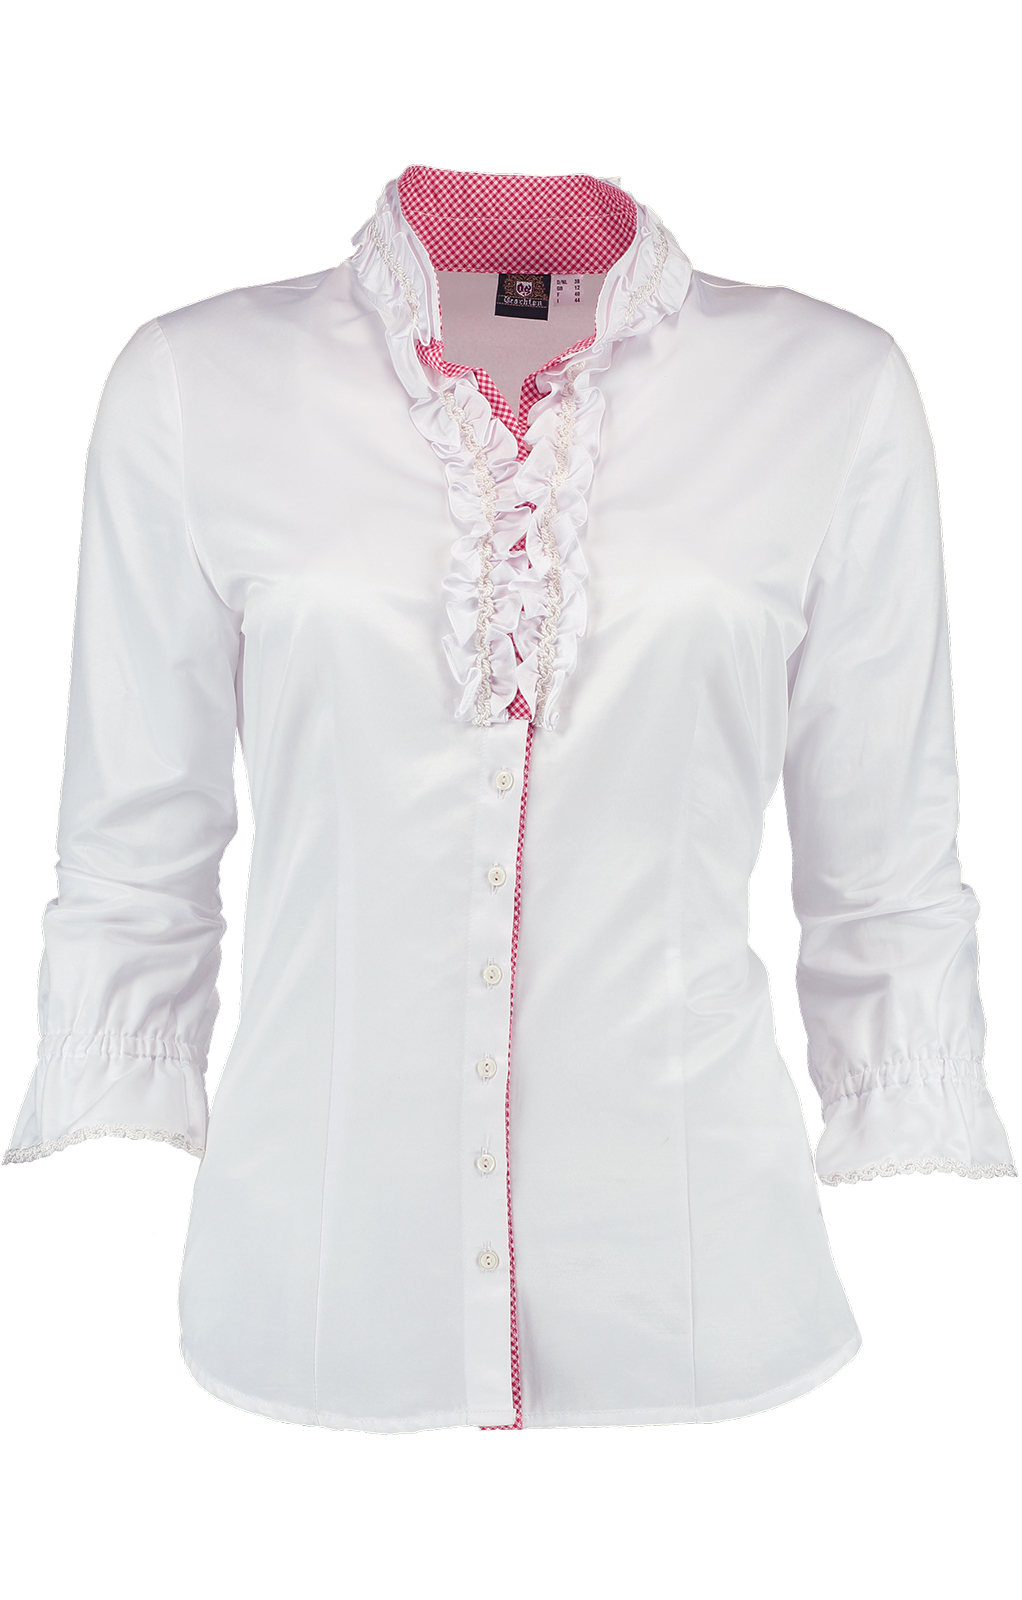 weitere Bilder von Traditional blouse VELA white red